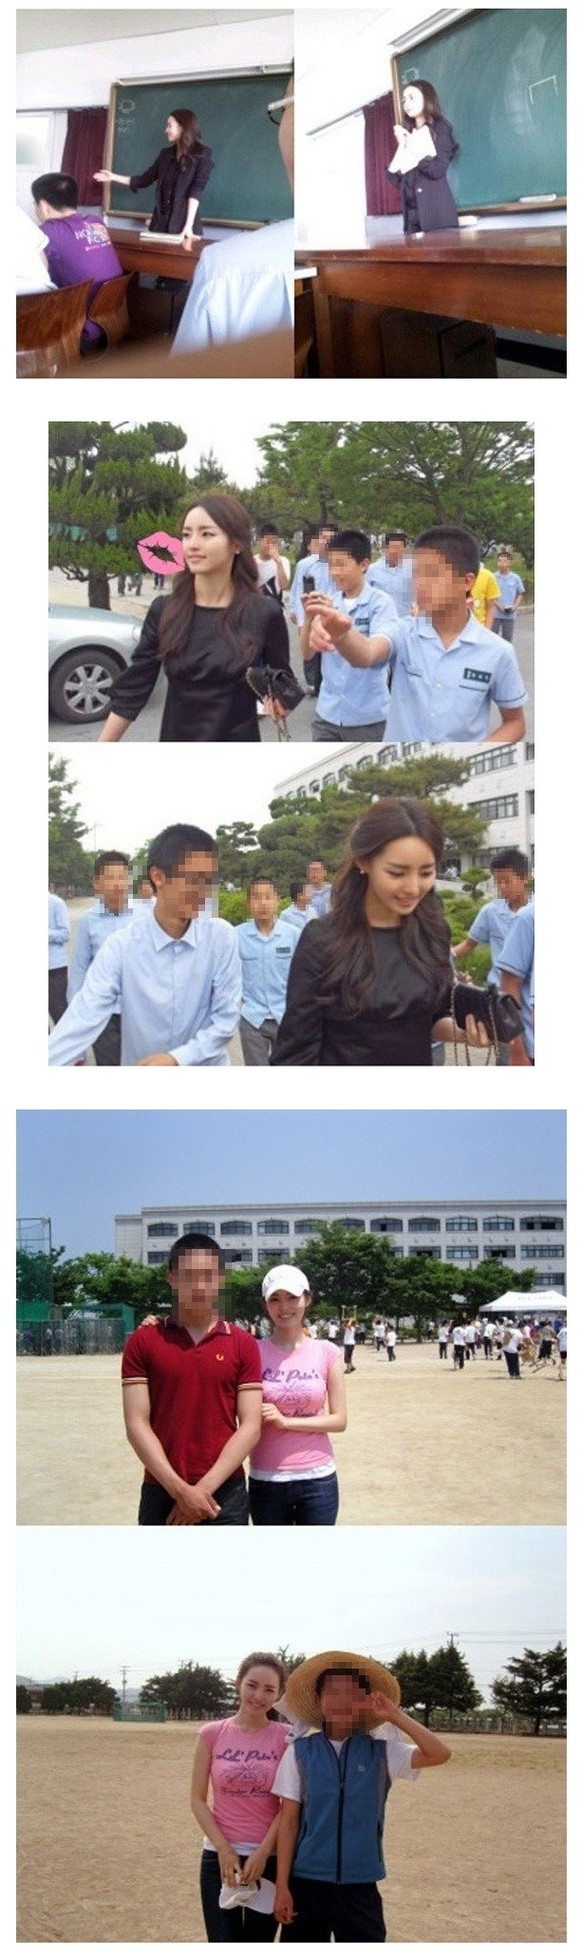 
Khi Nayeong ở giảng đường, cô nhận được rất nhiều sự quan tâm của học sinh.
